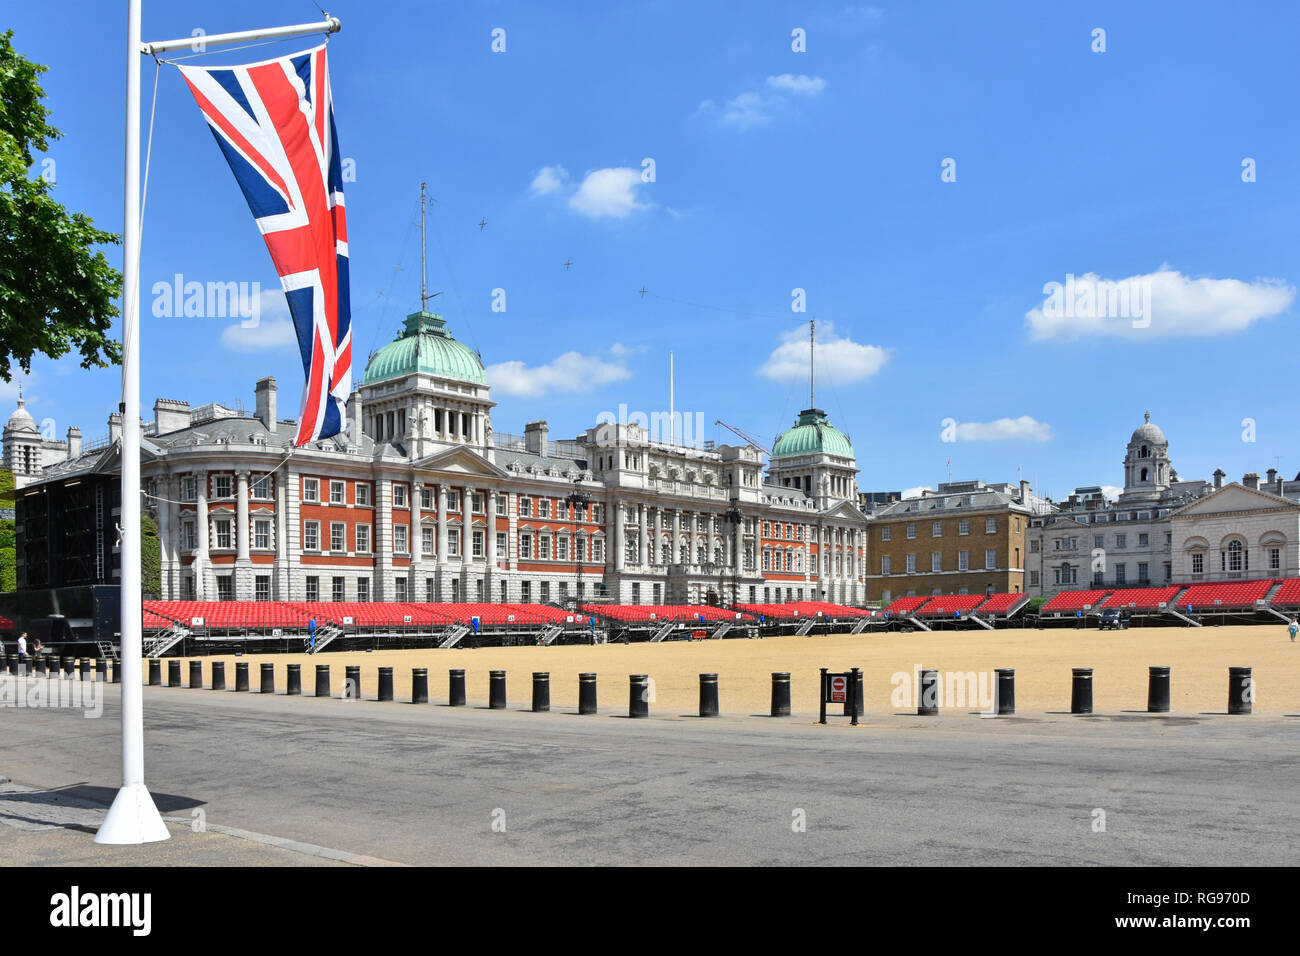 Bornes de sécurité protection sur Horse Guards Parade Ground summer events & vieille façades union jack flag dans iconic London England UK Banque D'Images